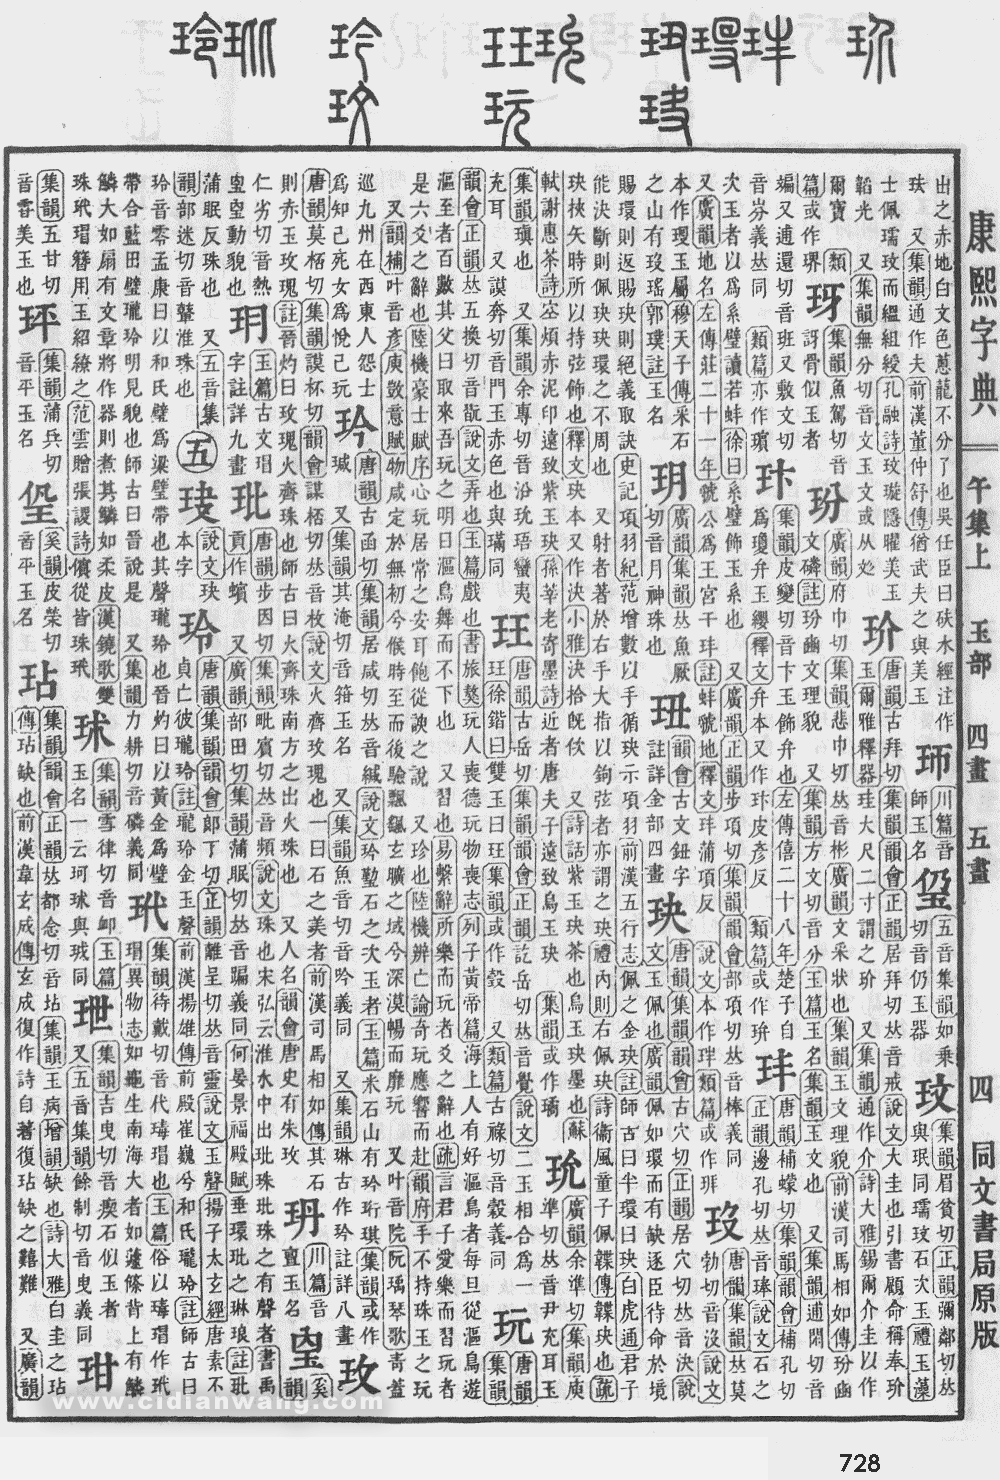 康熙字典掃描版第728頁